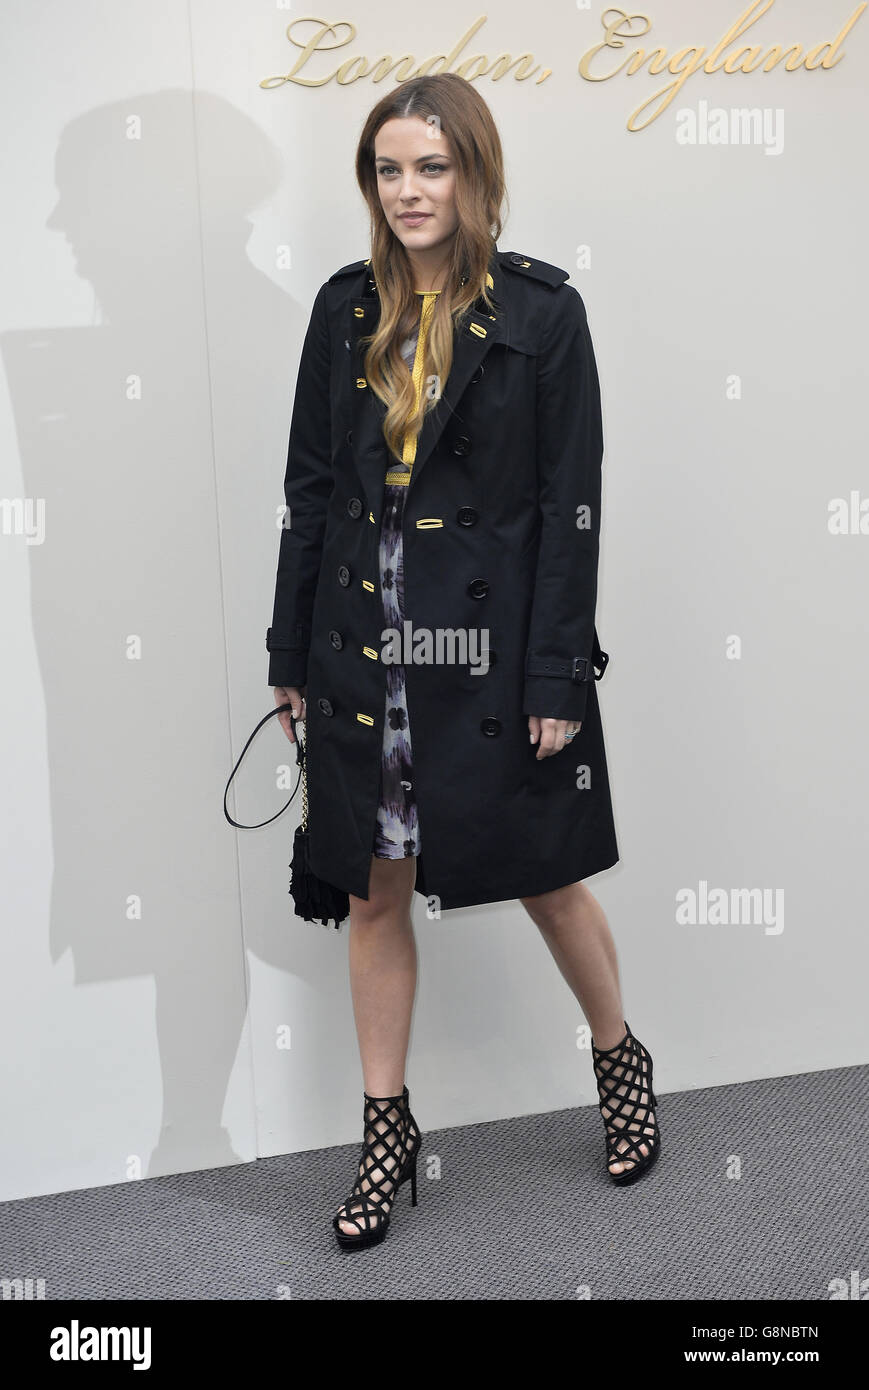 Riley Keough arriva allo spettacolo di abbigliamento da donna Burberry  Prorsum presso i Kensington Gardens, come parte della London Fashion Week  Foto stock - Alamy